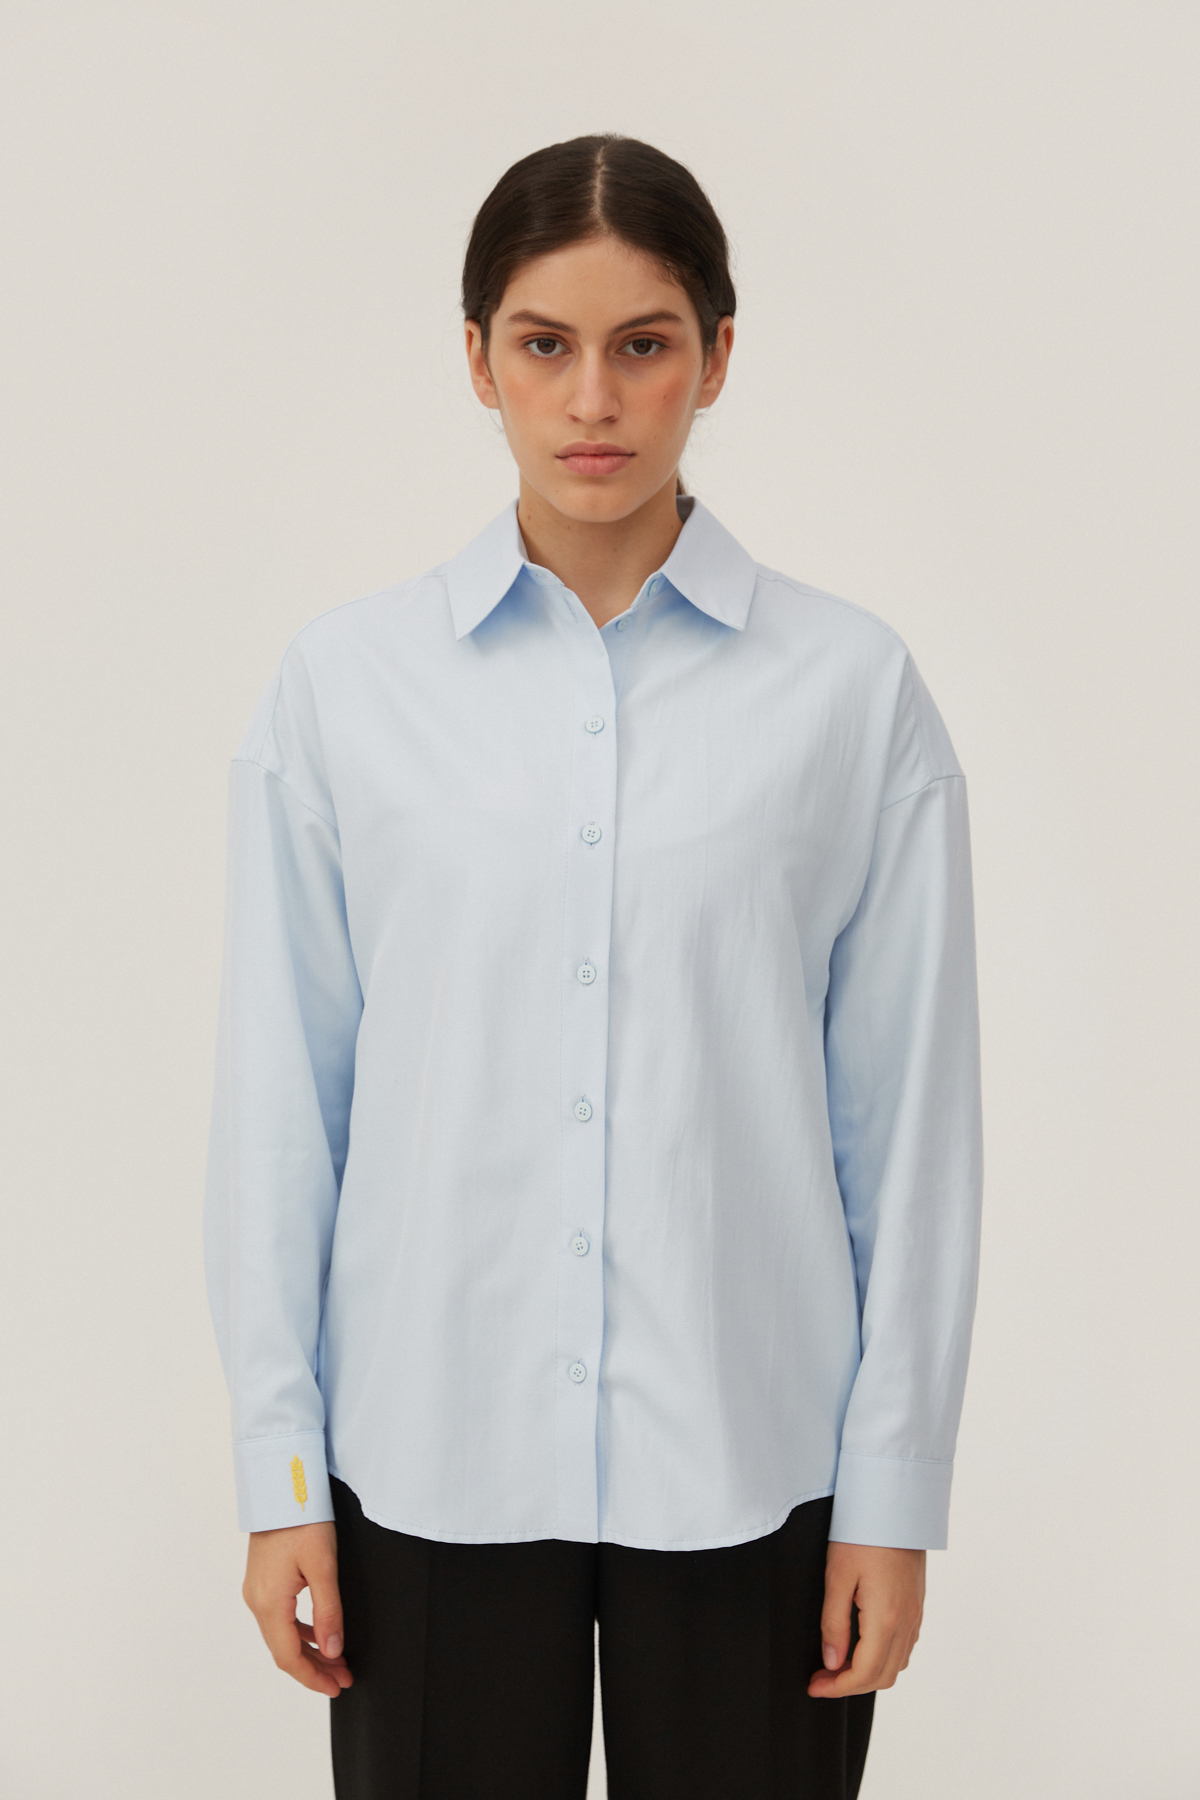 Голубая прямая рубашка с колосом пшеницы с хлопком, фото 5